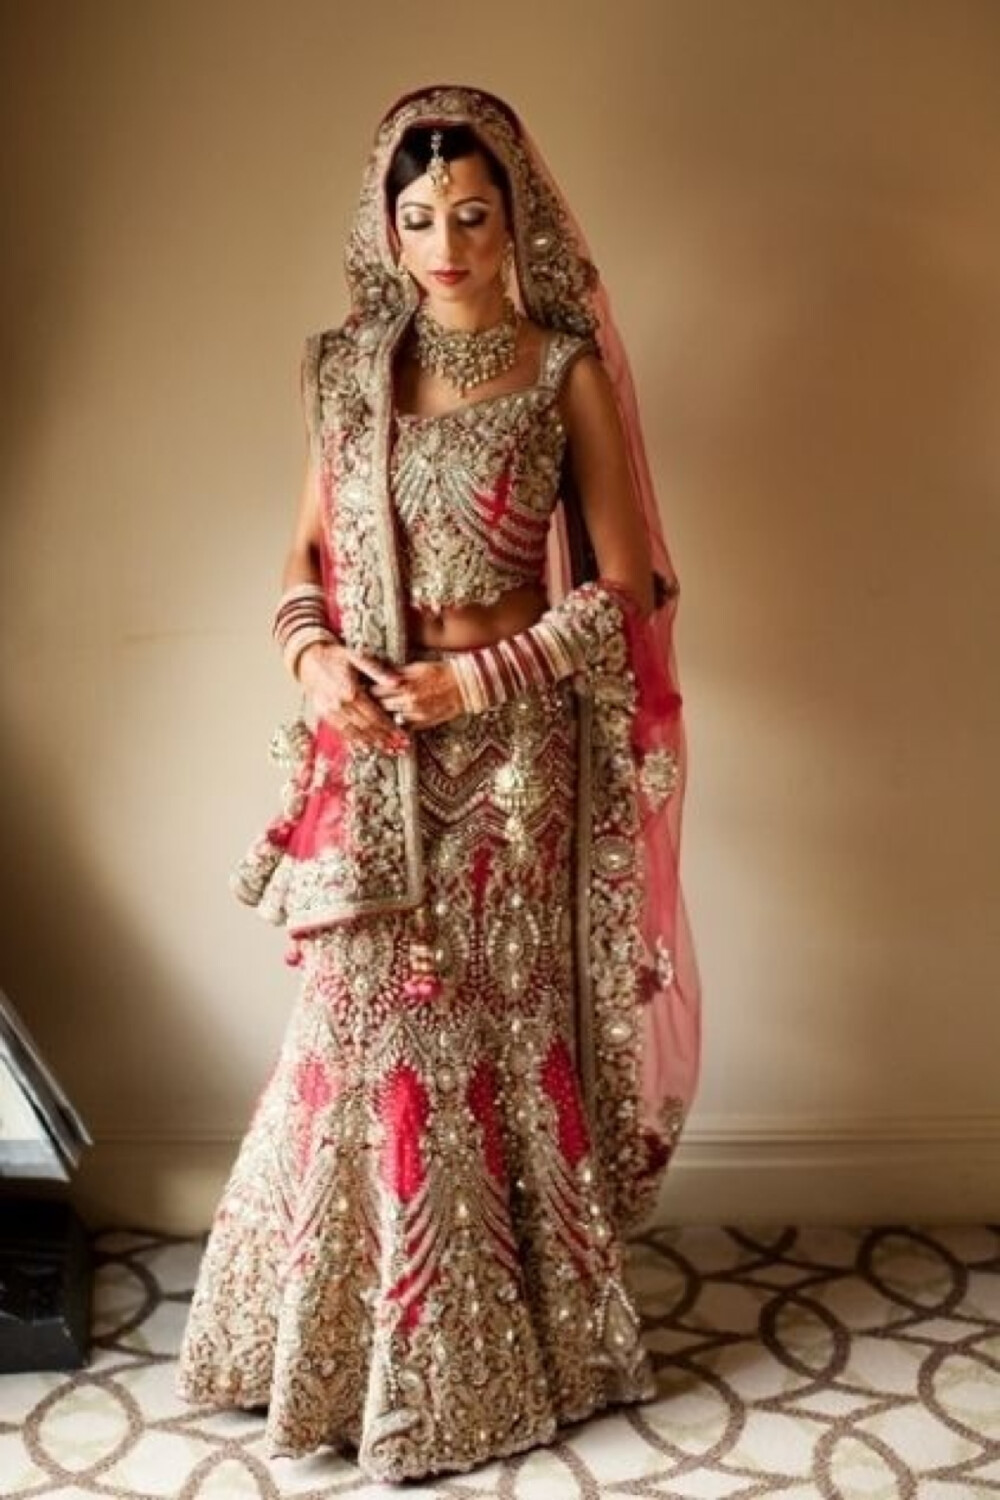 印度新娘、印度美女、印度服饰